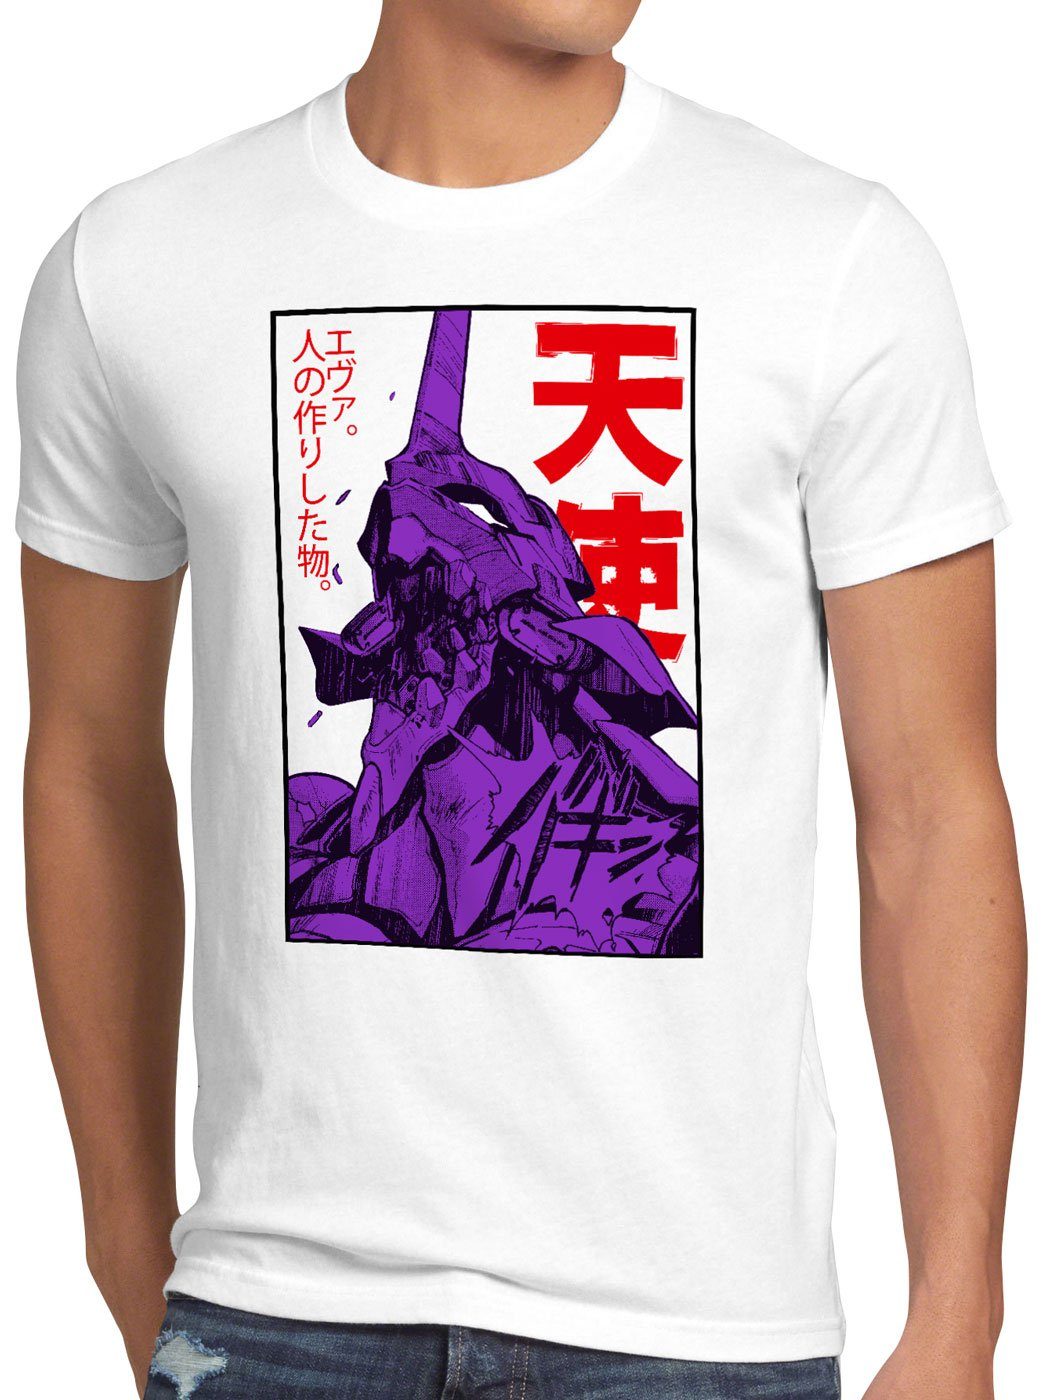 style3 Print-Shirt Herren T-Shirt Neo-Tokyo 3 Rage evangelion anime japanisch weiß